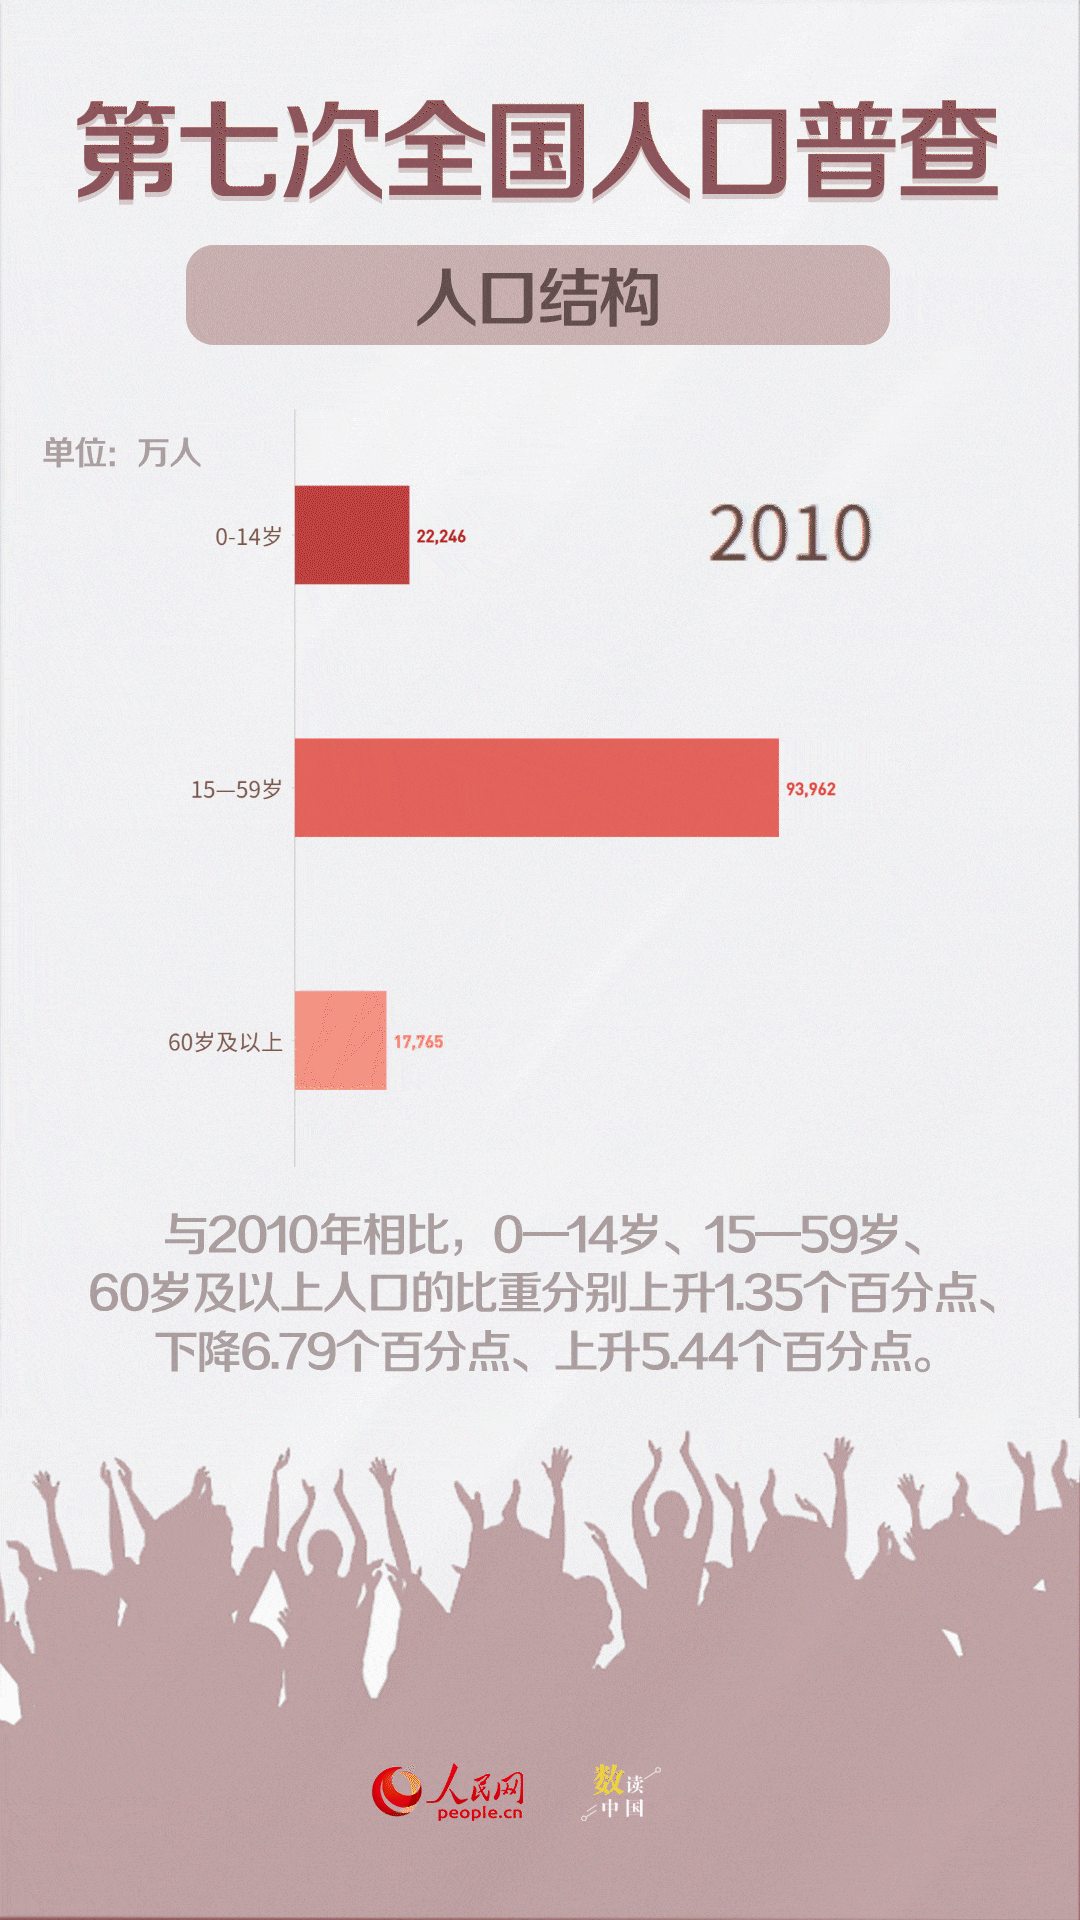 透过中国第七次全国人口普查的数据看清这些表象背后的本质